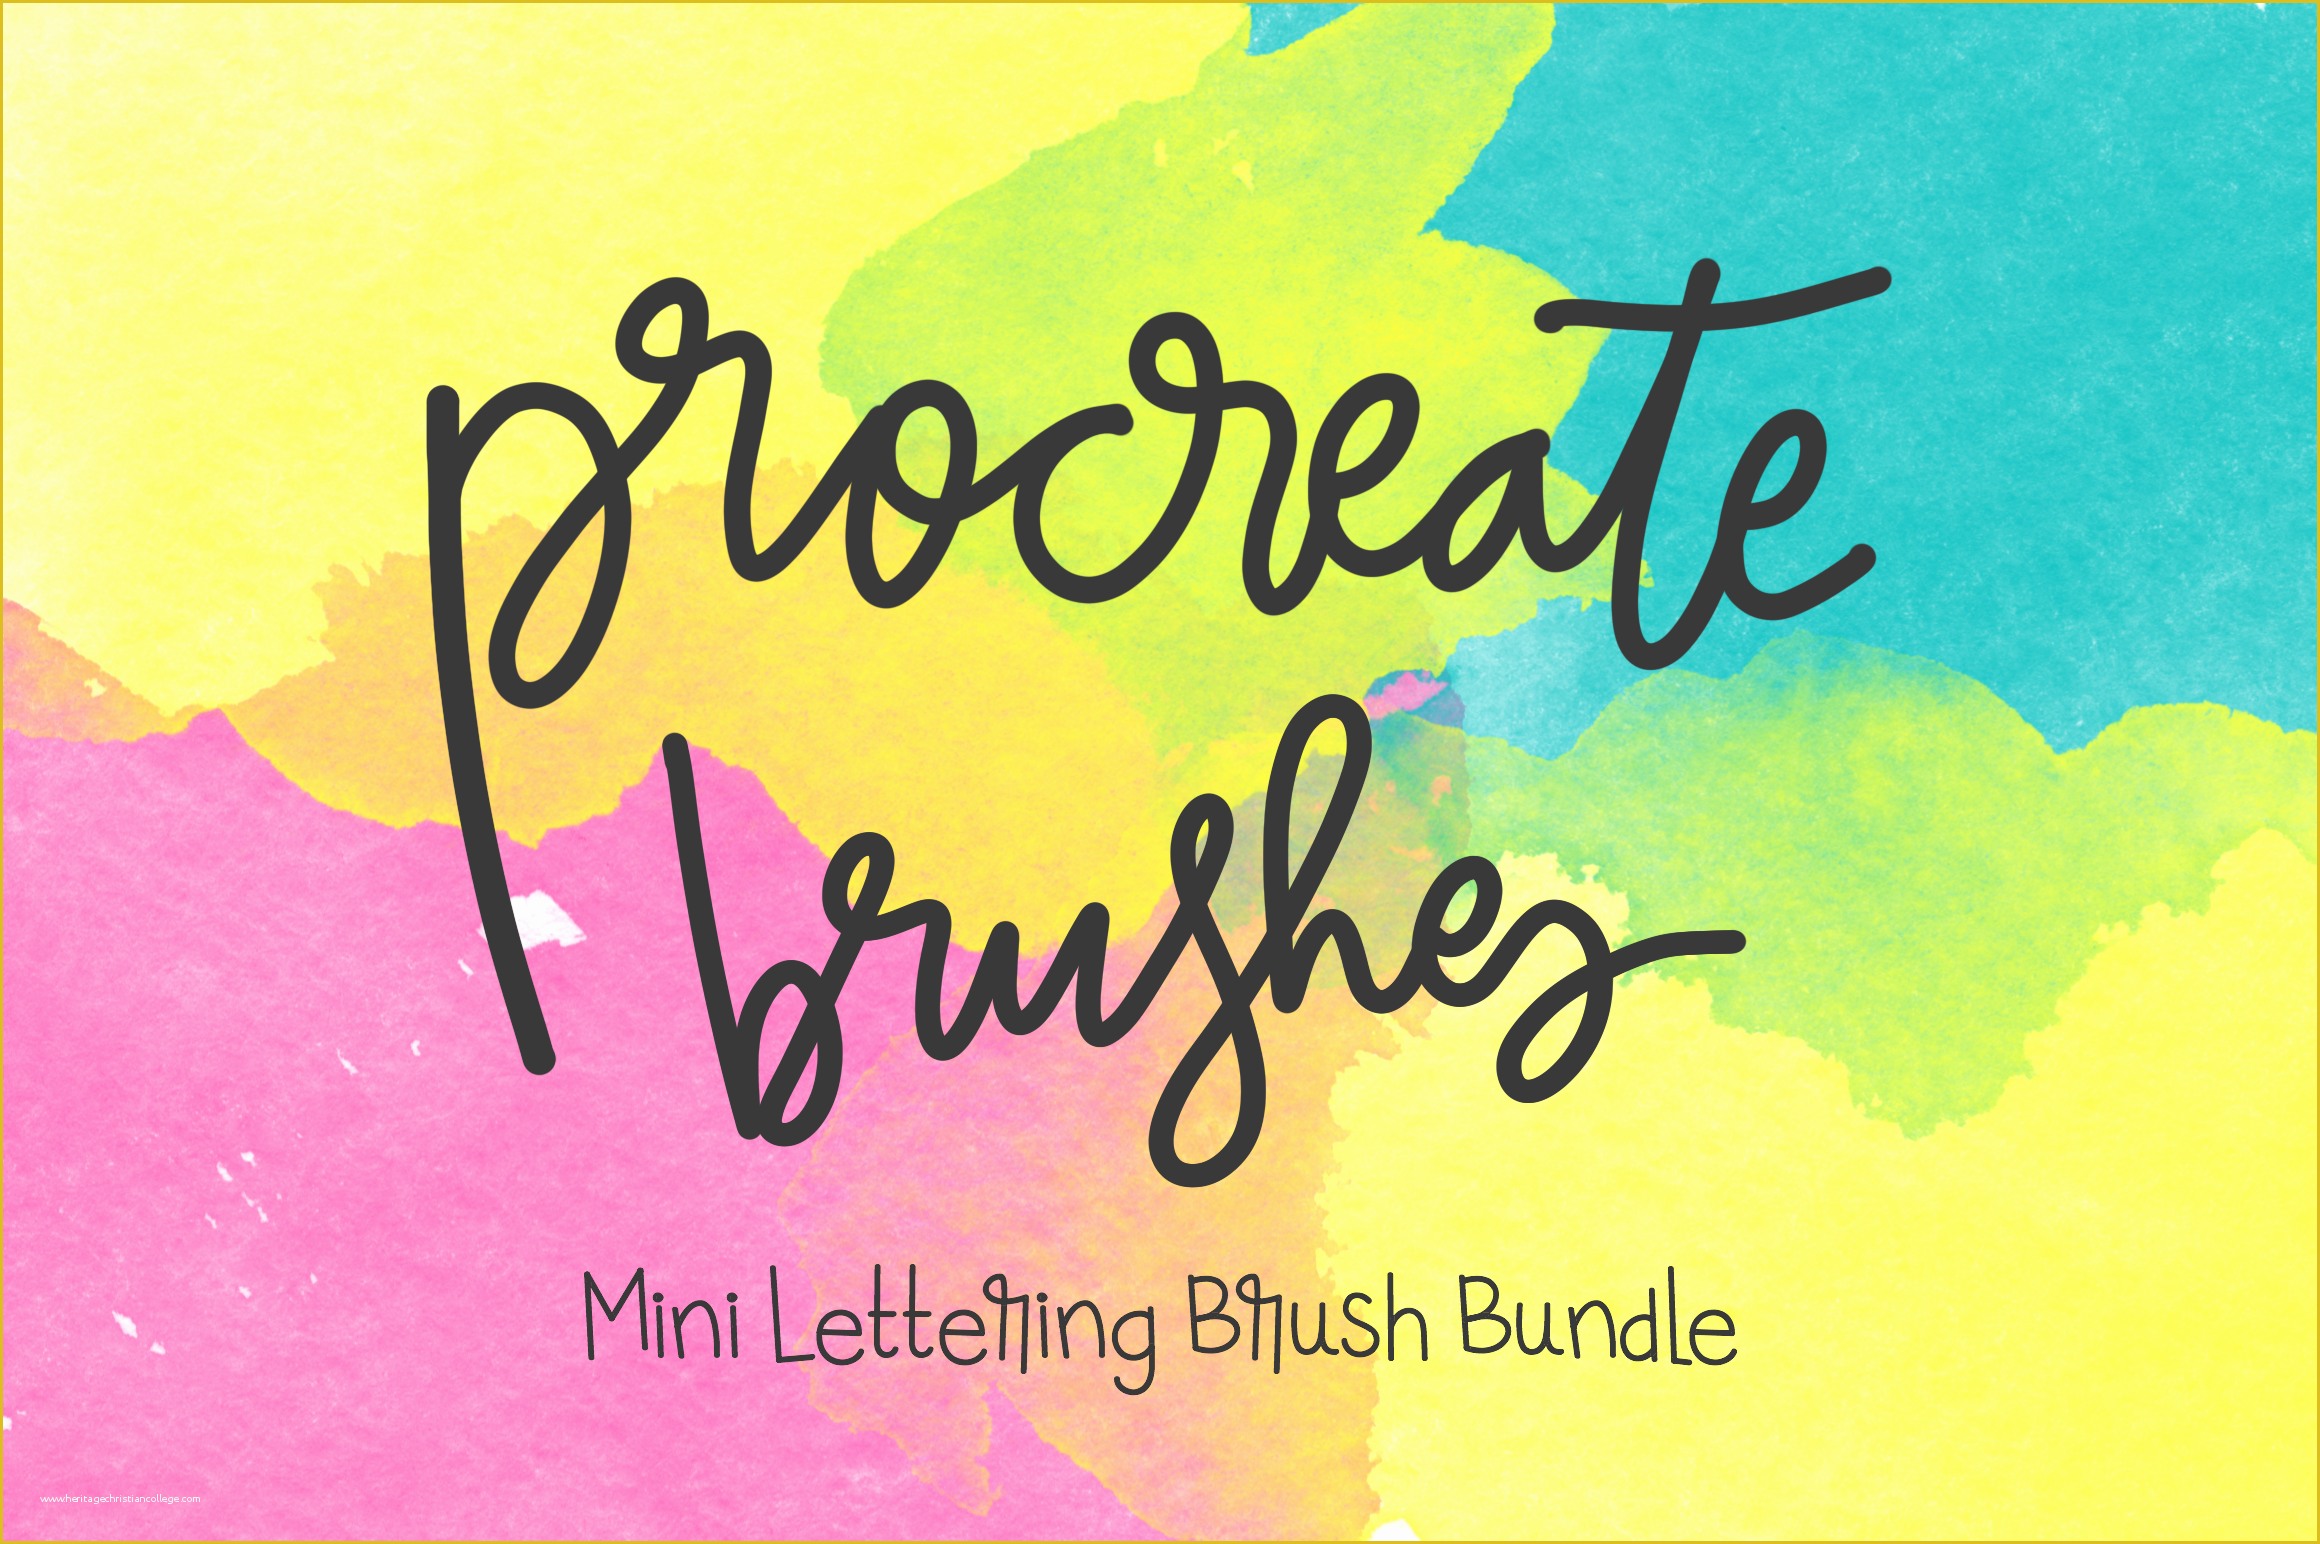 Free Procreate Templates Of Procreate Lettering 4 Brush Bundle Brushes On Creative